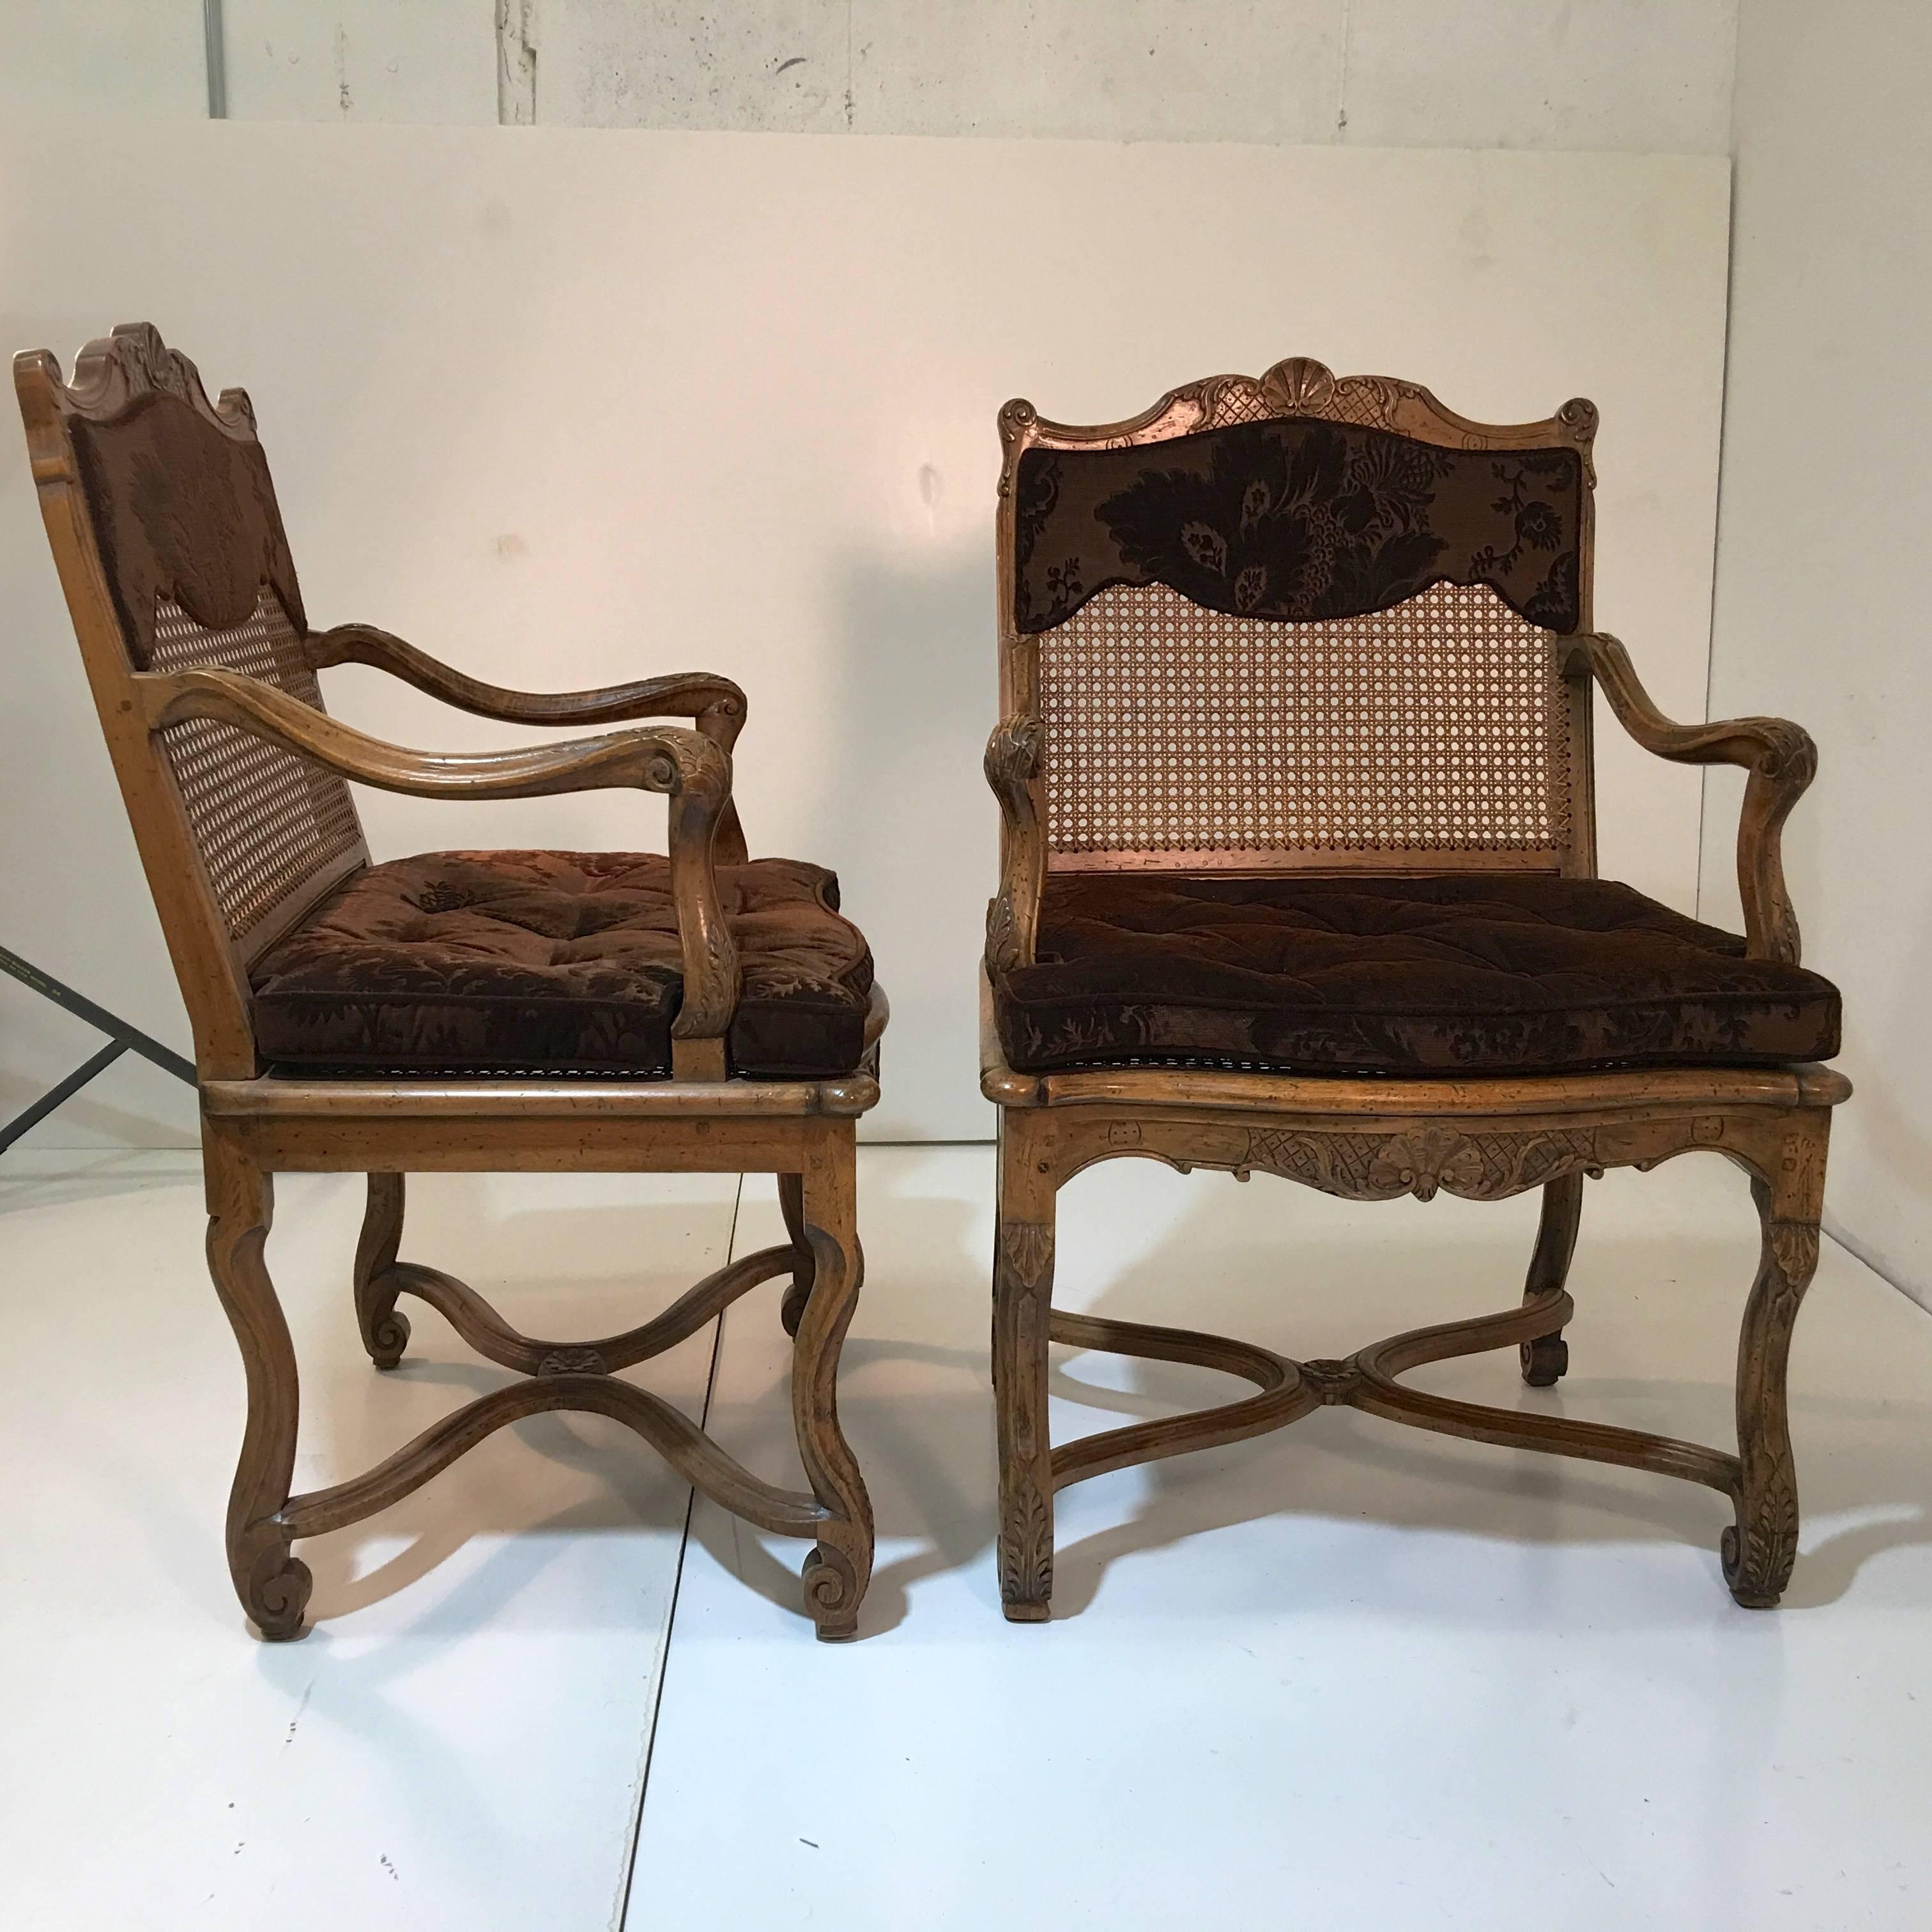 Ensemble de dix fauteuils de salle à manger du légendaire sculpteur Don Ruseau Inc. à New York. 
Style provincial Louis XV avec dossiers et assises cannelés. Sculptée à la main, toutes les articulations sont chevillées et non collées. 
Les coussins